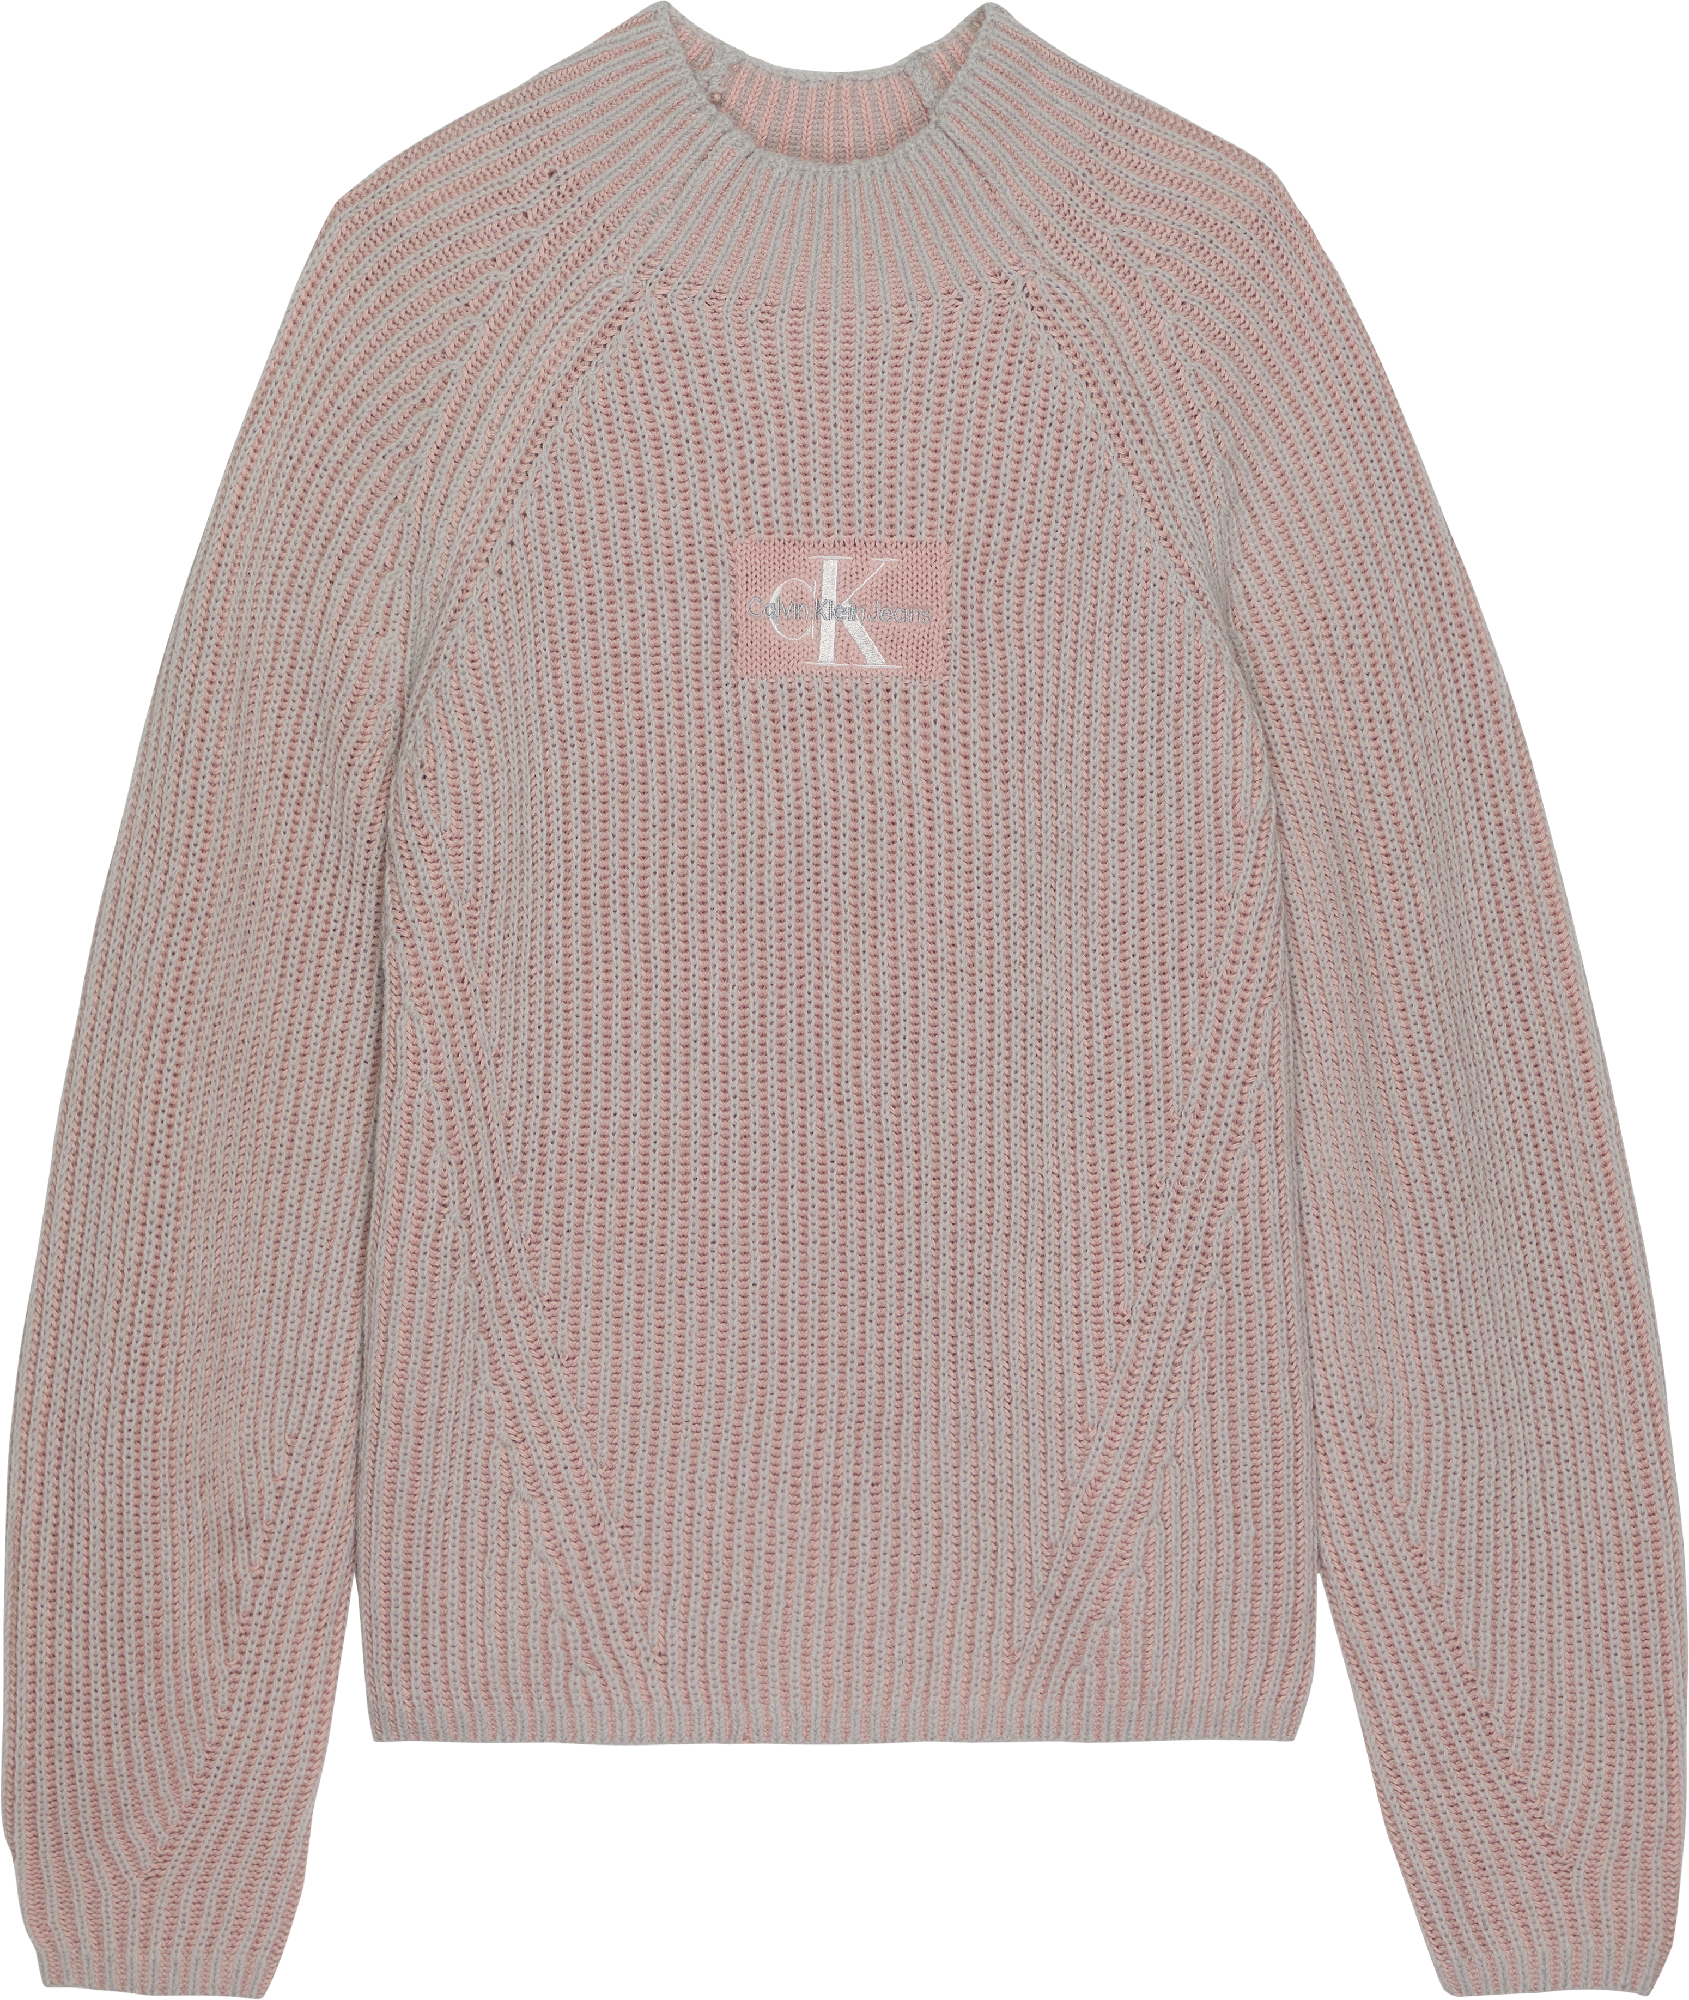 Meisjes DUO COLOUR MONOGRAM SWEATER van Calvin Klein in de kleur Pink Blush in maat 176.